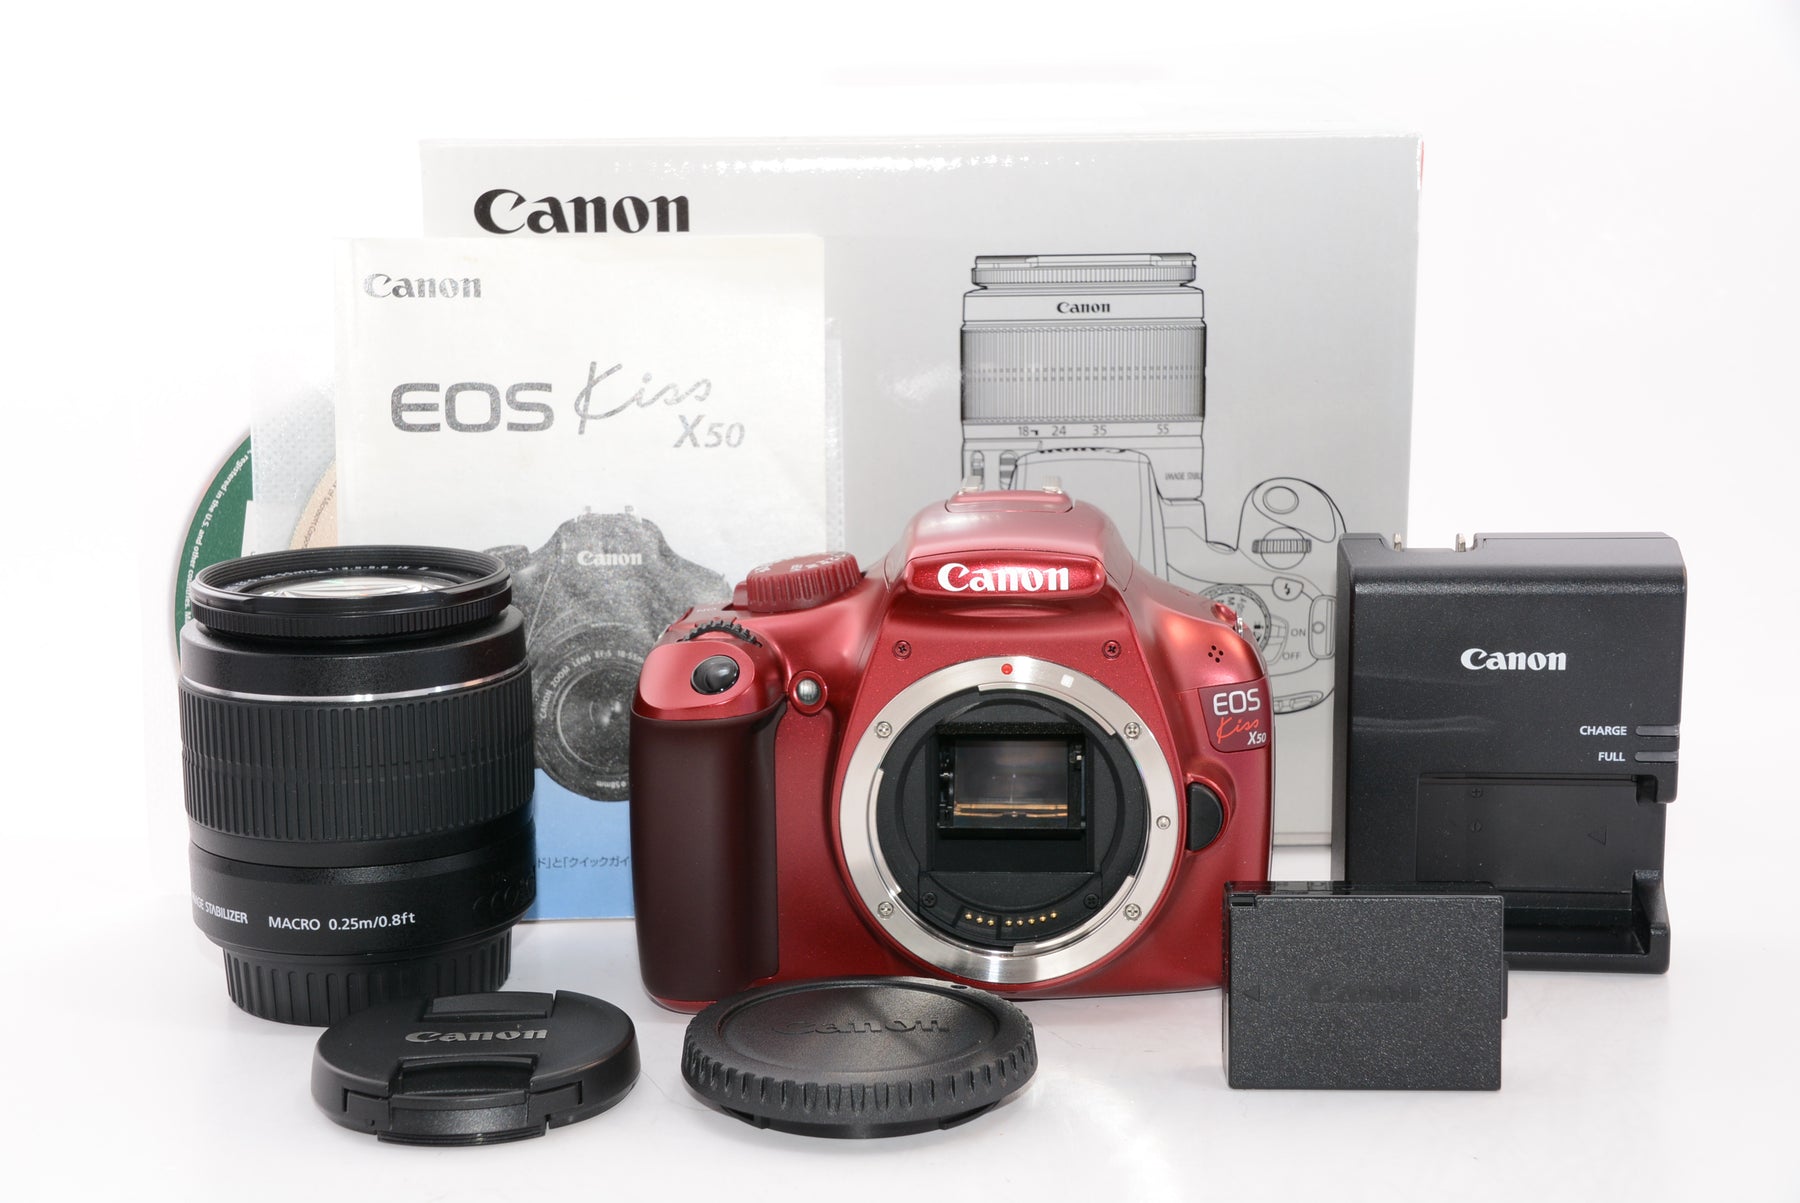 【外観特上級】Canon デジタル一眼レフカメラ EOS Kiss X50 レンズキット EF-S18-55mm IsII付属 レッド  KISSX50RE-1855IS2LK